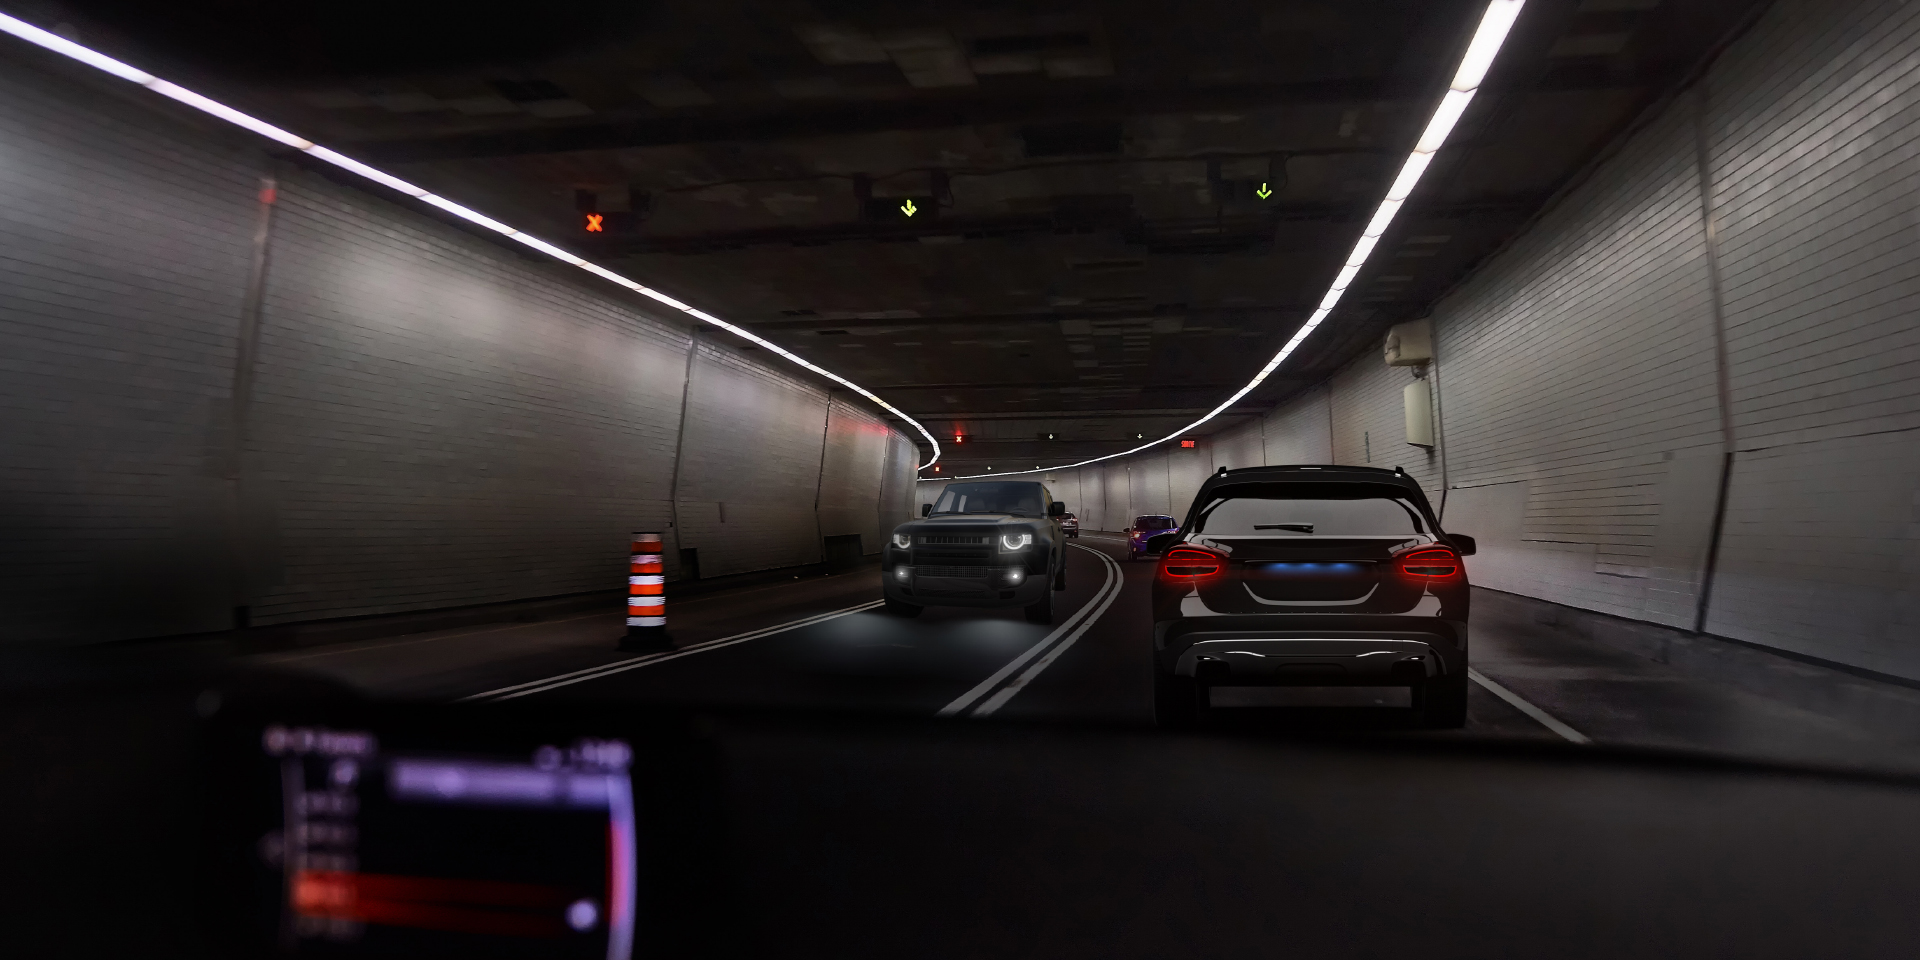 トンネル内で対向車が来た時のドライバーの視界を示す2枚の画像。一つは対向車とトンネルの照明のグレアがあり、もう一方はグレアがはっきりと軽減されている。